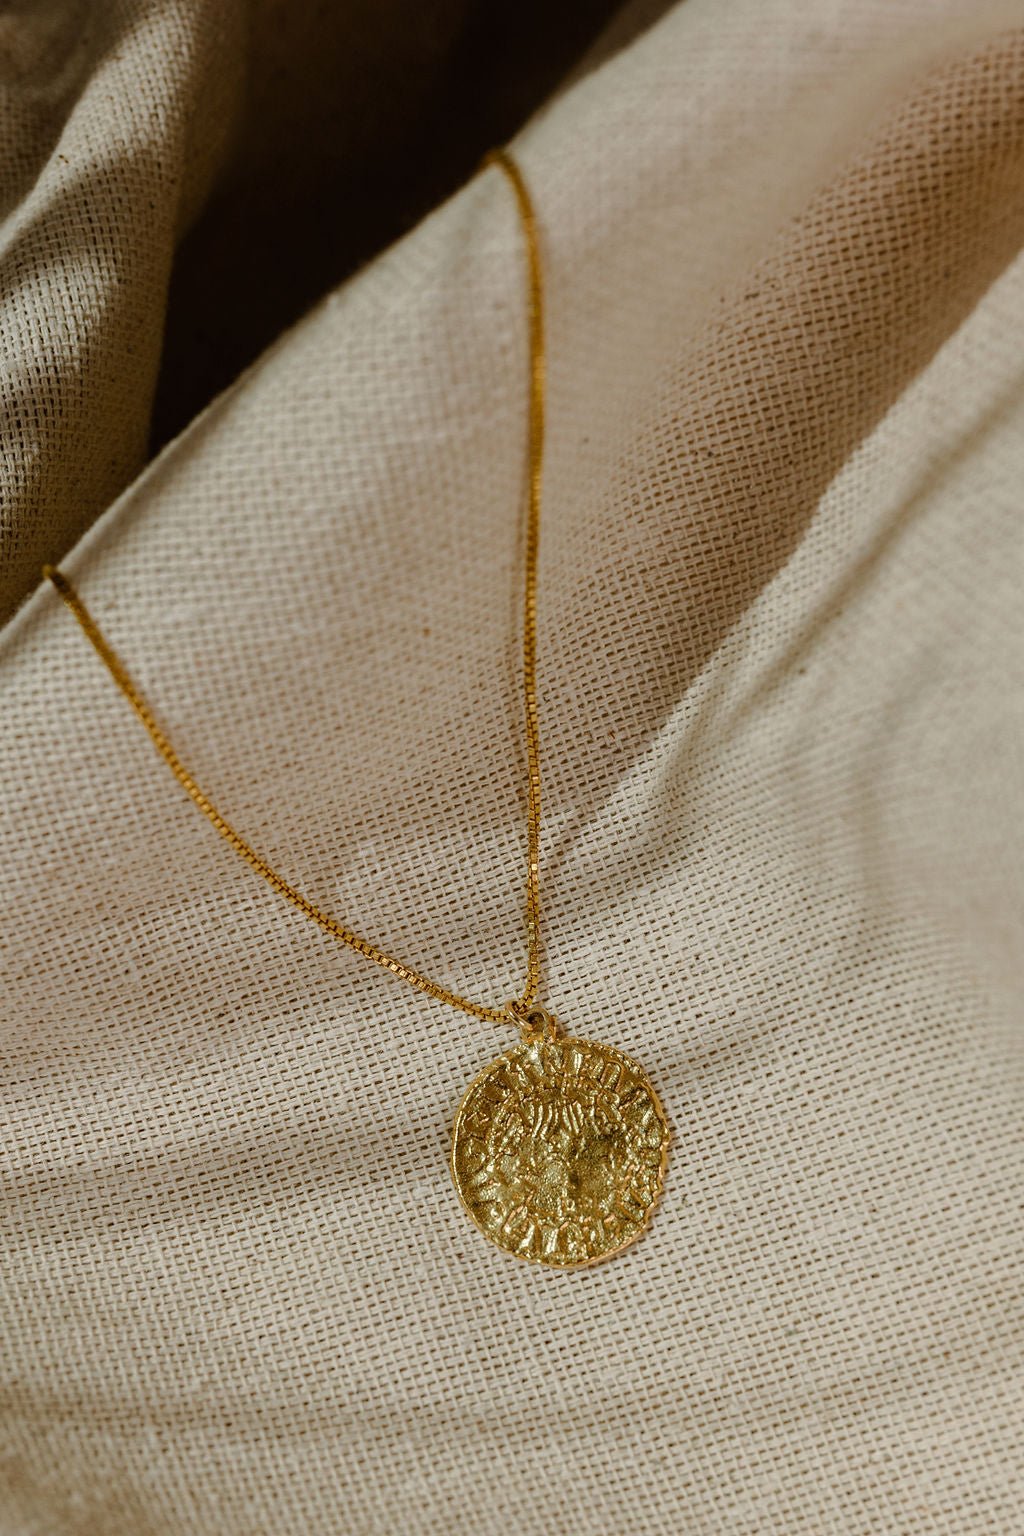 Silva Ancient Coin Necklace - Coin Pendant Necklace - Dea Dia